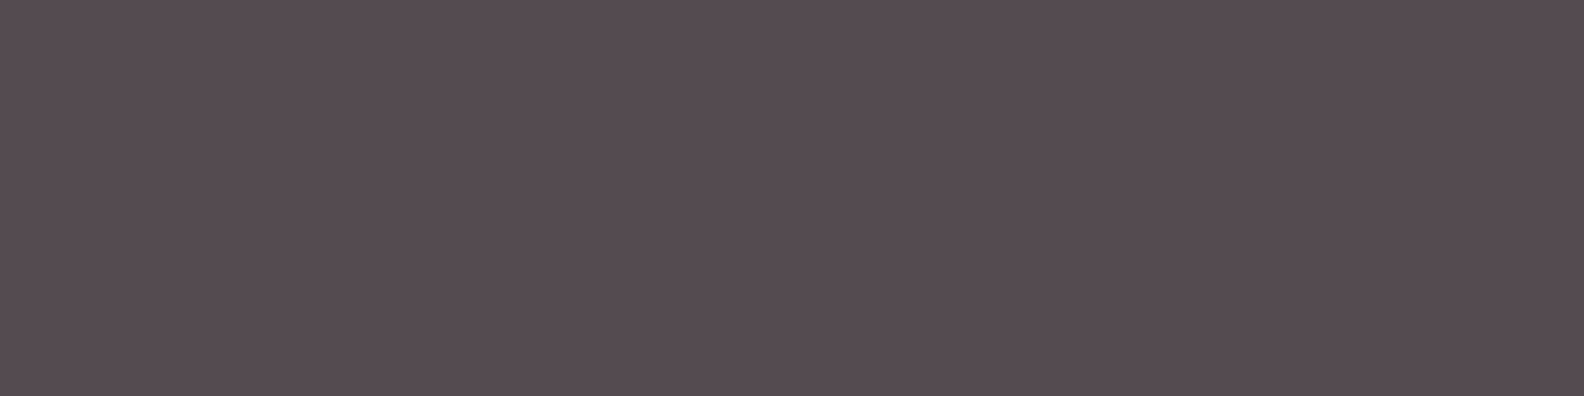 1584x396 Dark Liver Solid Color Background